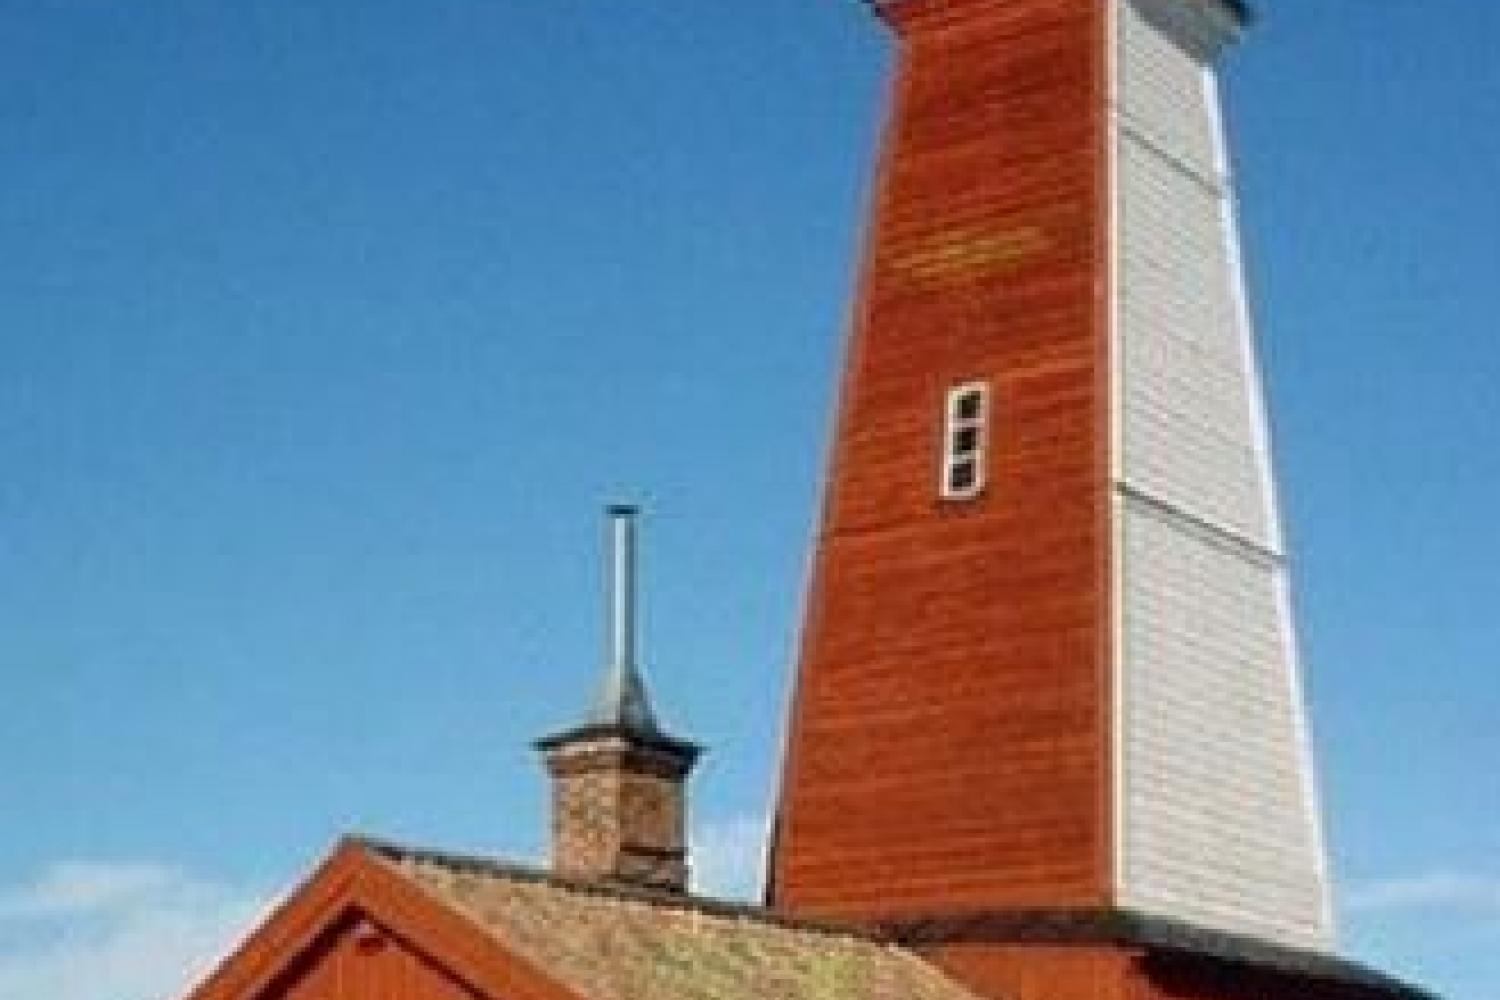 Böna Fyr Lighthouse